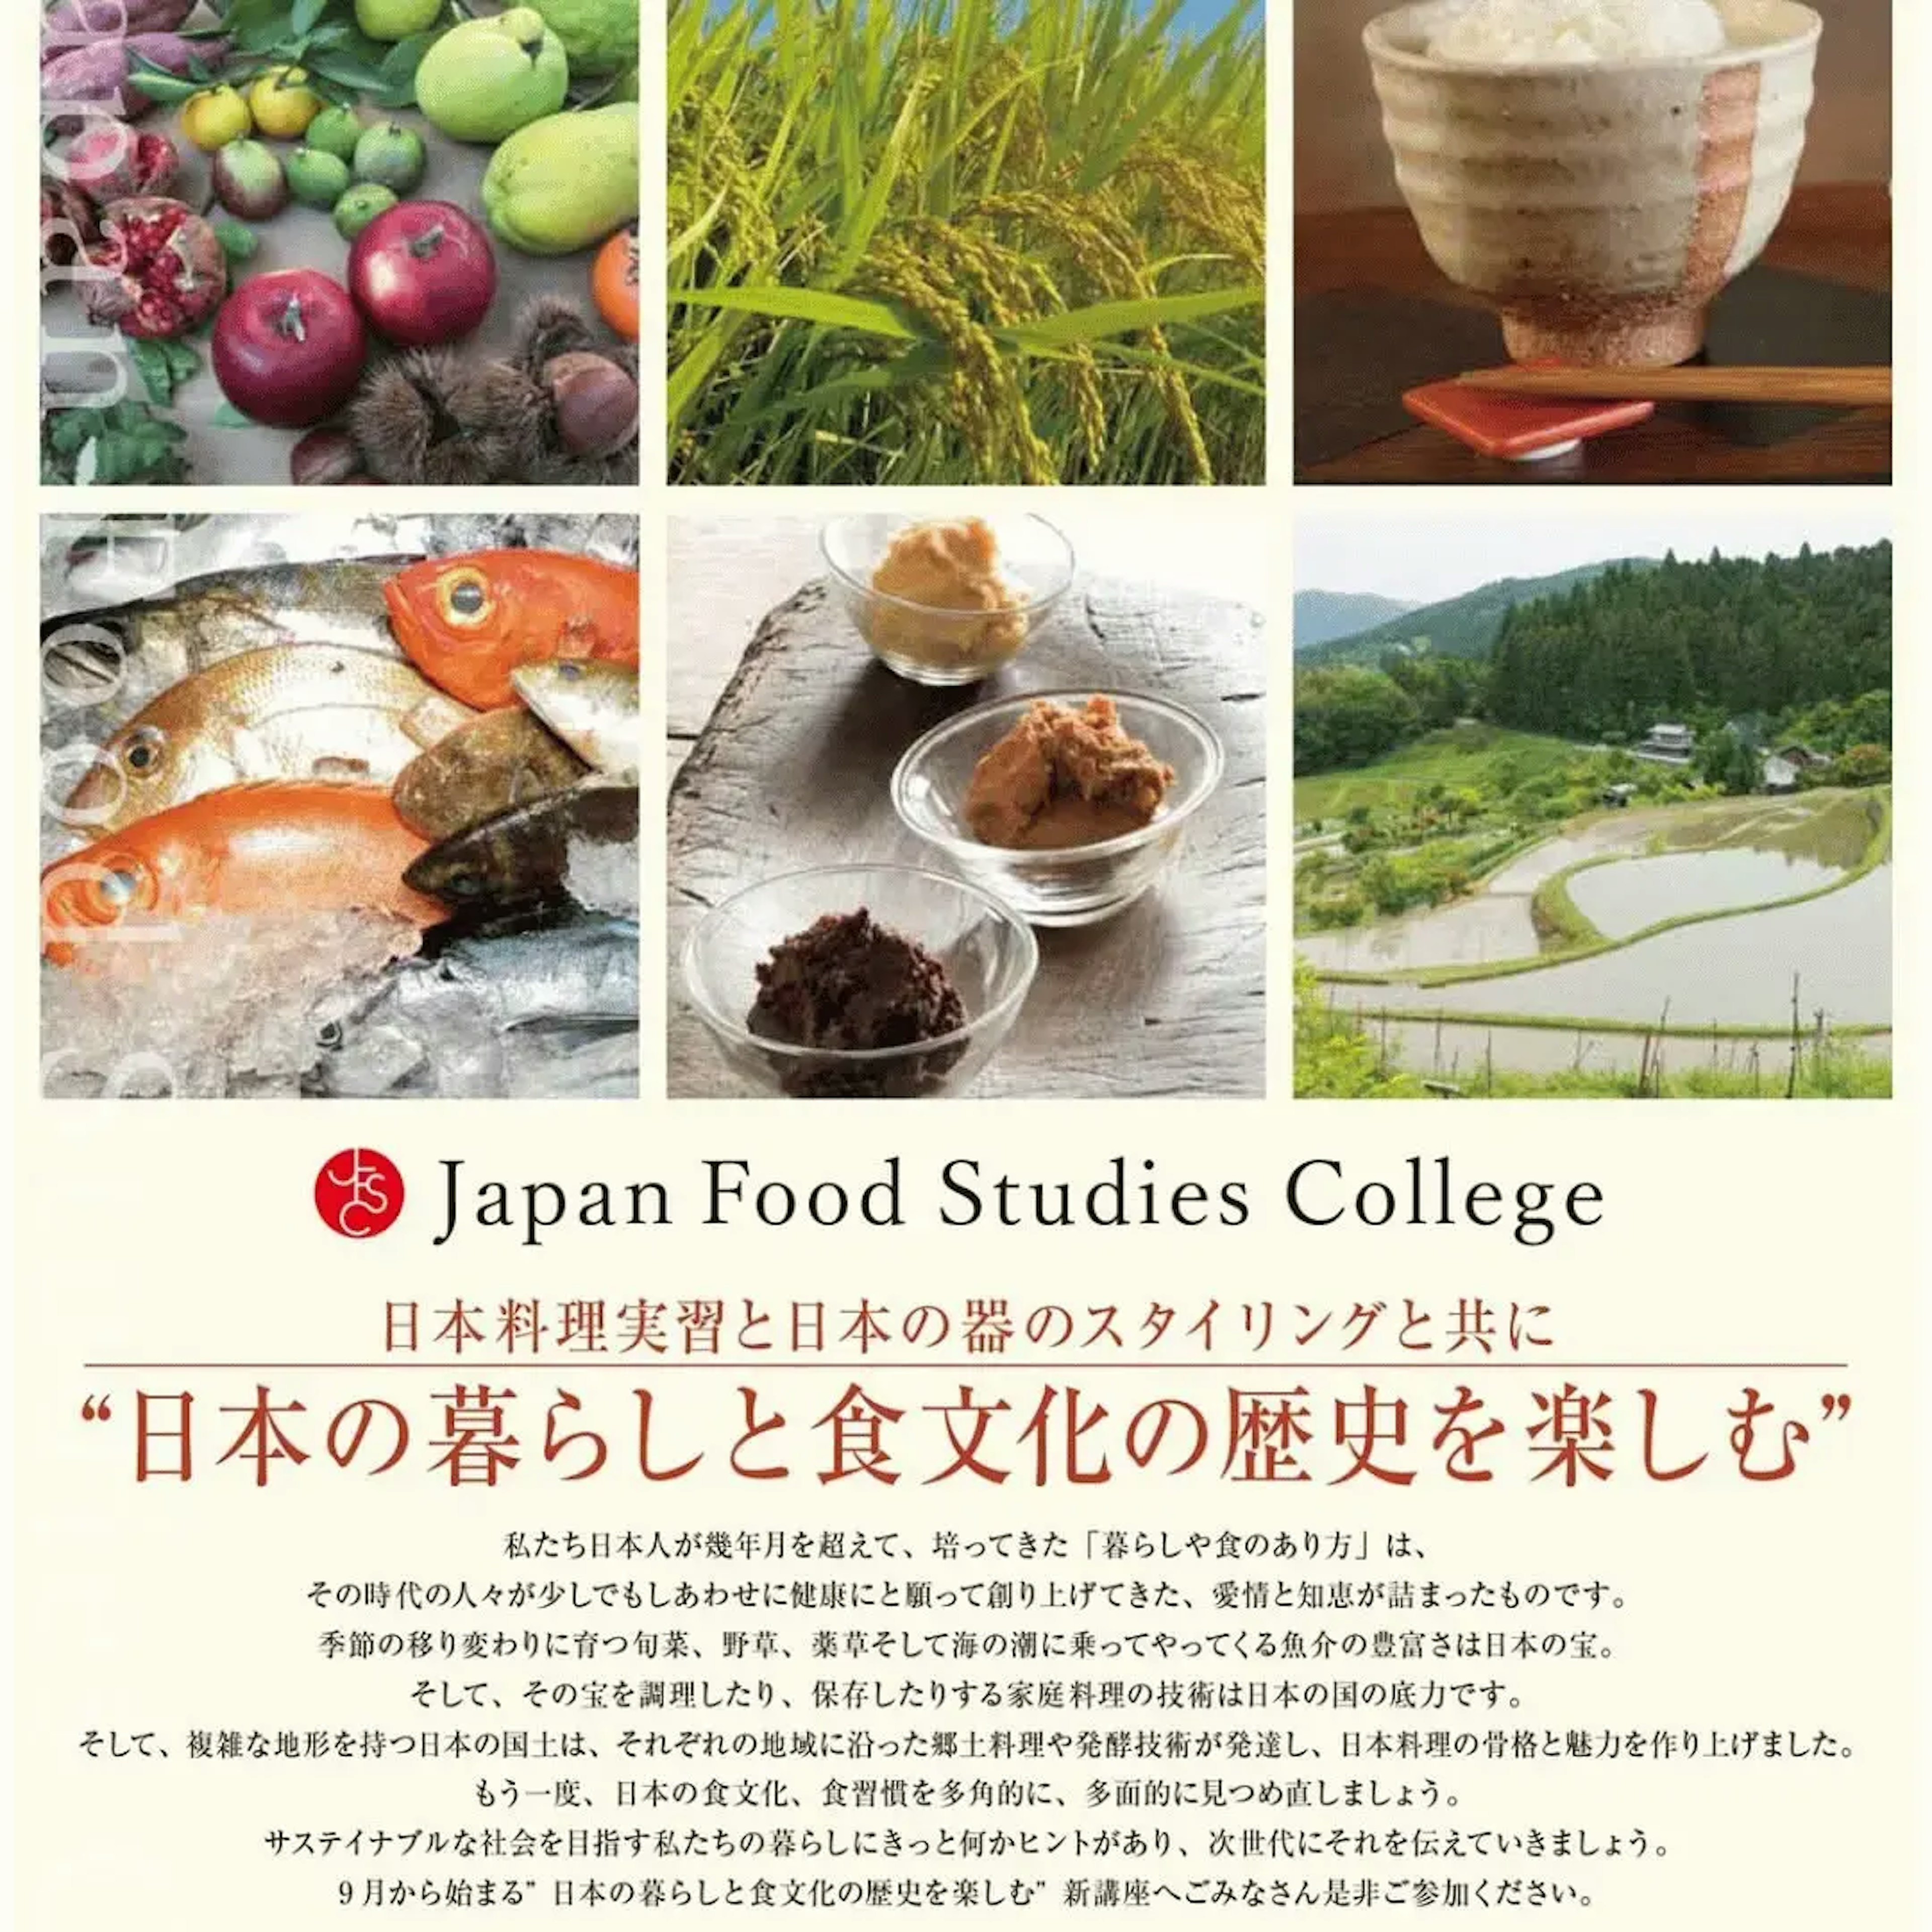 Japan Food Studies College-2a.webp